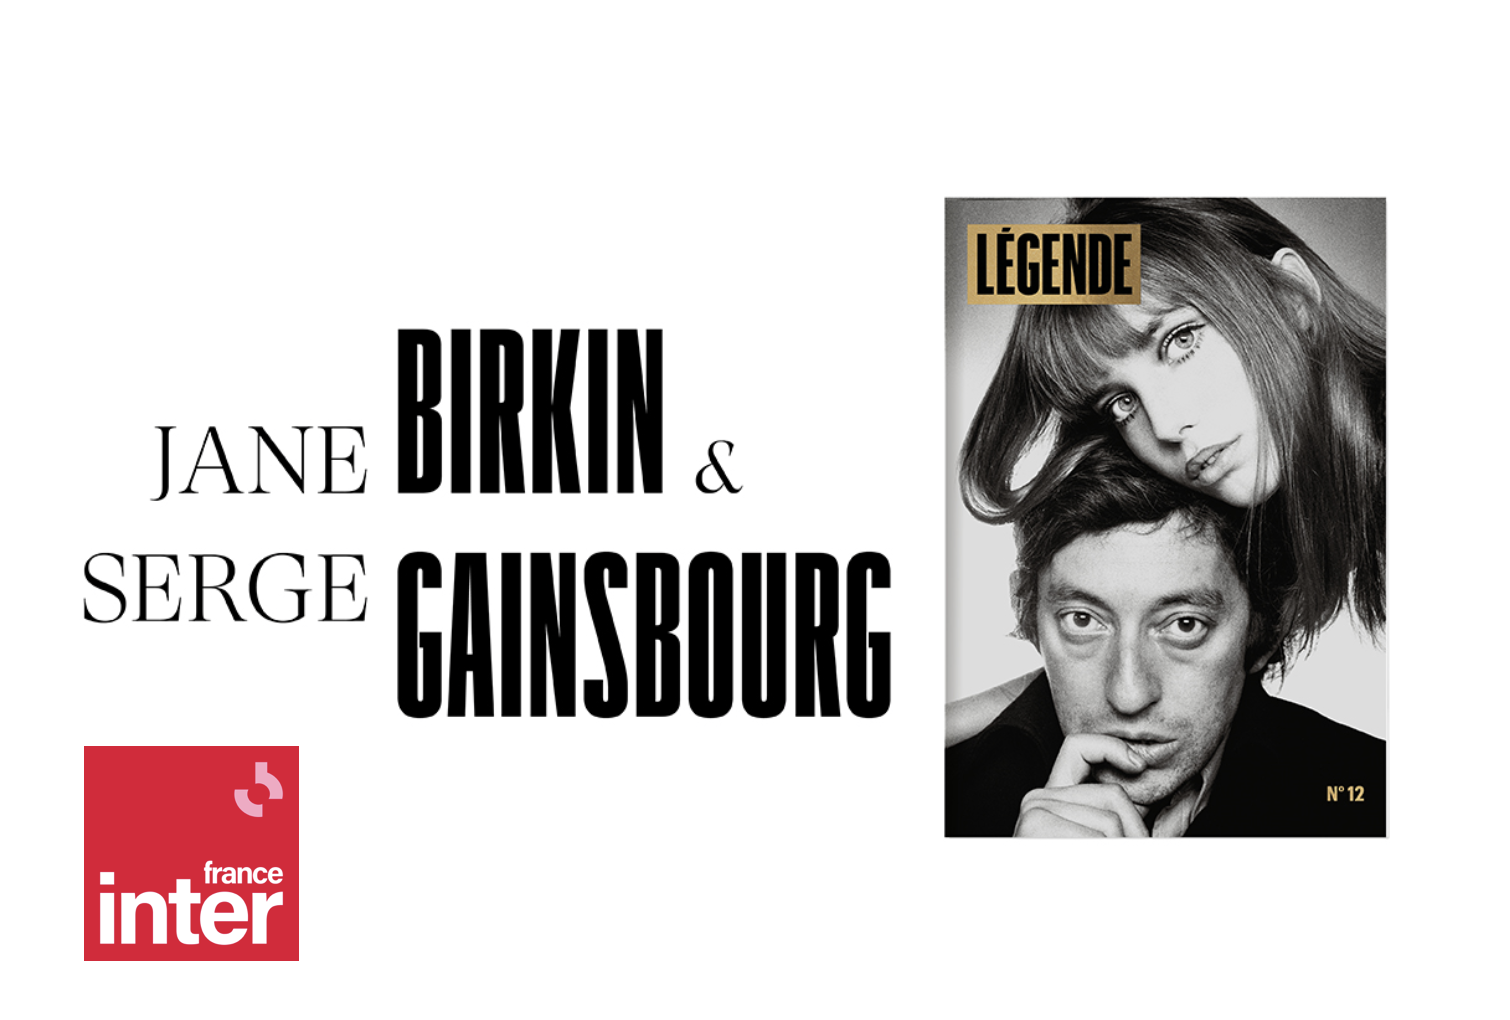 France Inter, partenaire de Légende n°12, consacré à Jane Birkin et à Serge Gainsbourg